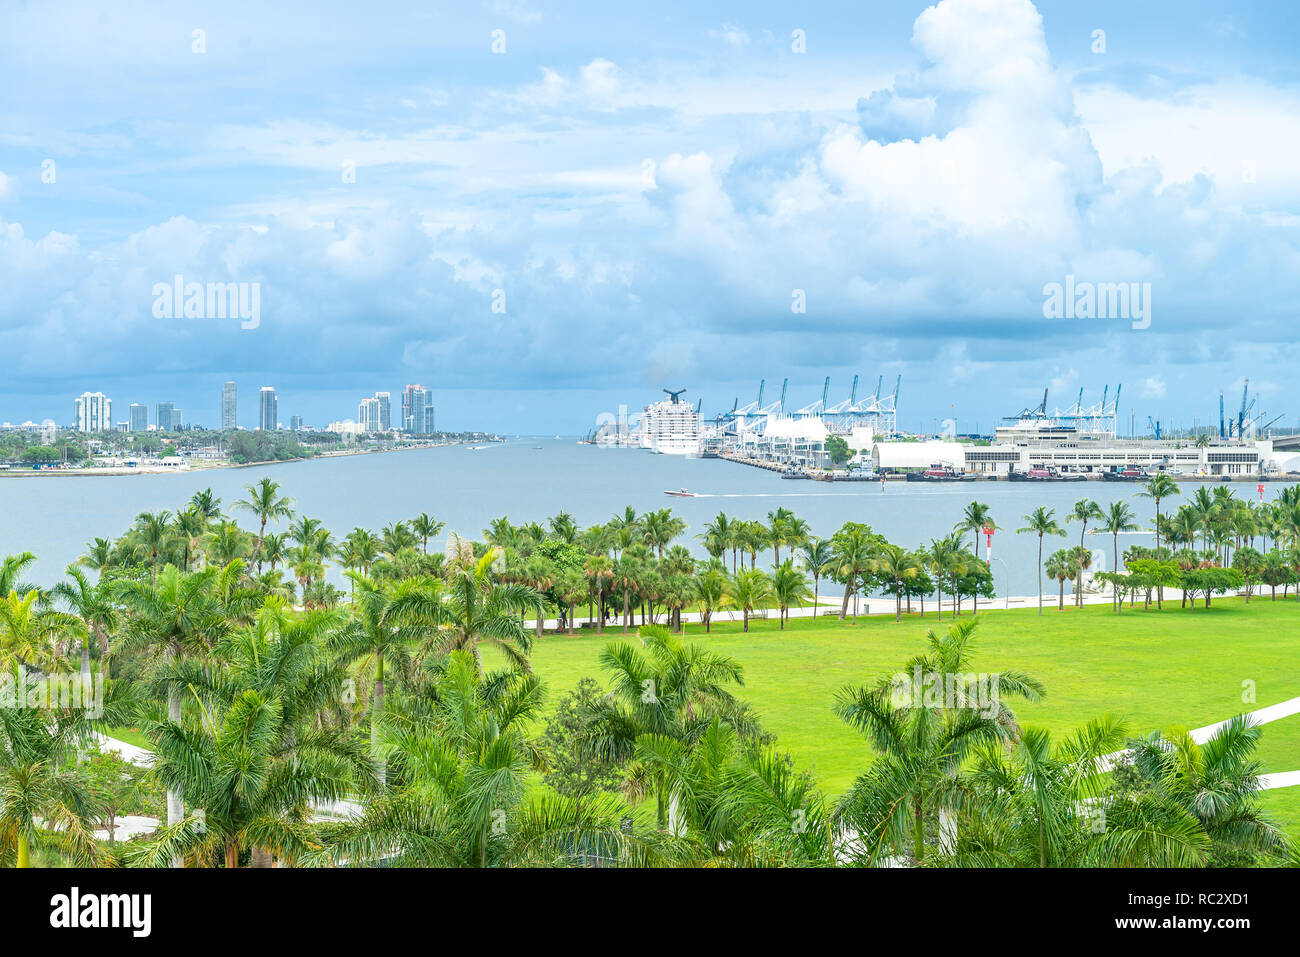 Miami, USA - jun 10, 2018: Skyline of Miami city from the museum park Stock Photo